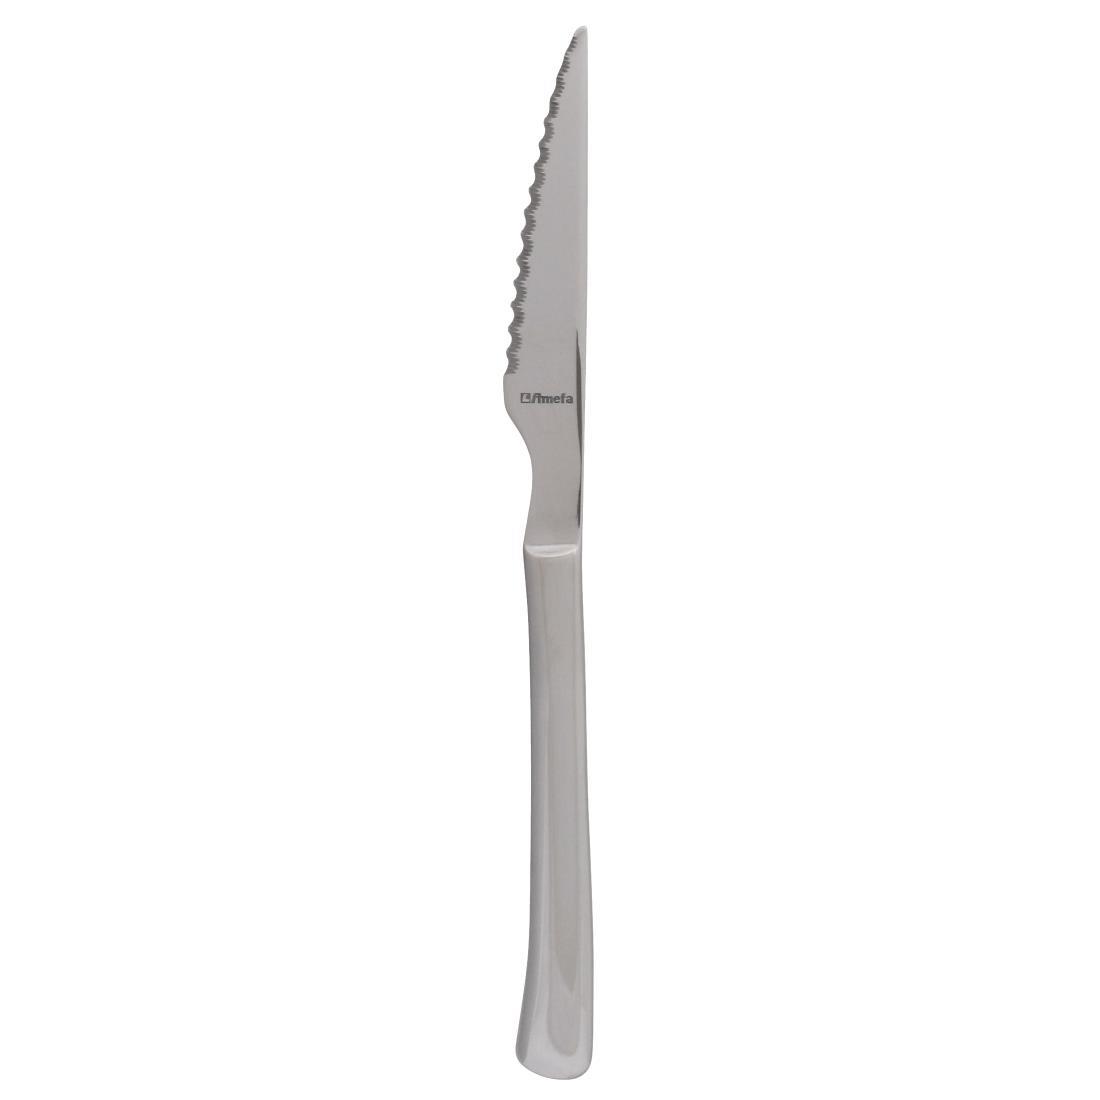 Amefa Chuletero Steak Knives (Pack of 12) - DM249  - 2